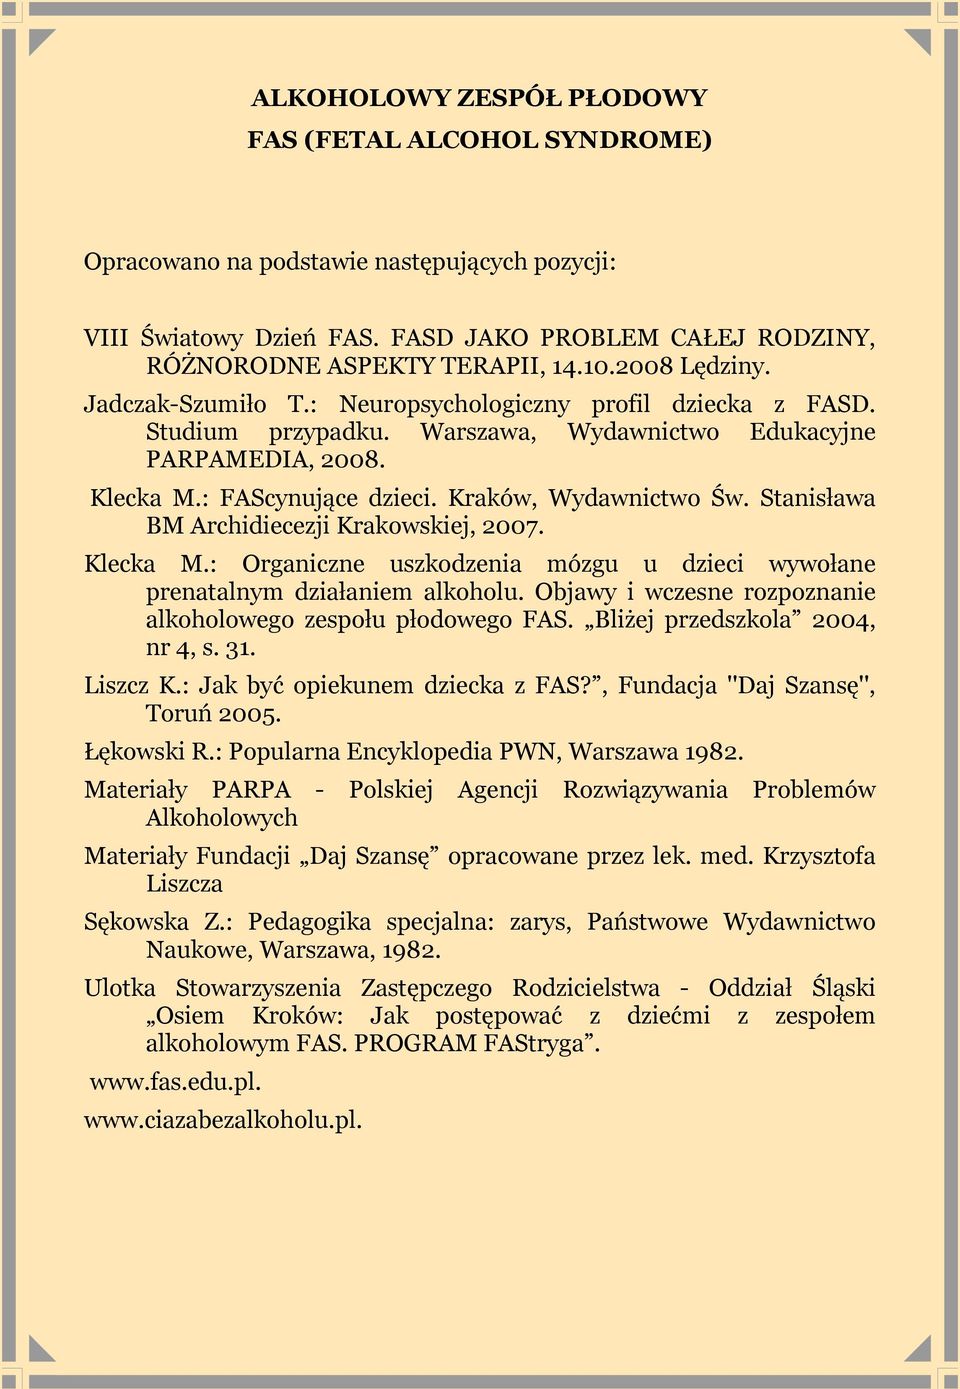 Kraków, Wydawnictwo Św. Stanisława BM Archidiecezji Krakowskiej, 2007. Klecka M.: Organiczne uszkodzenia mózgu u dzieci wywołane prenatalnym działaniem alkoholu.